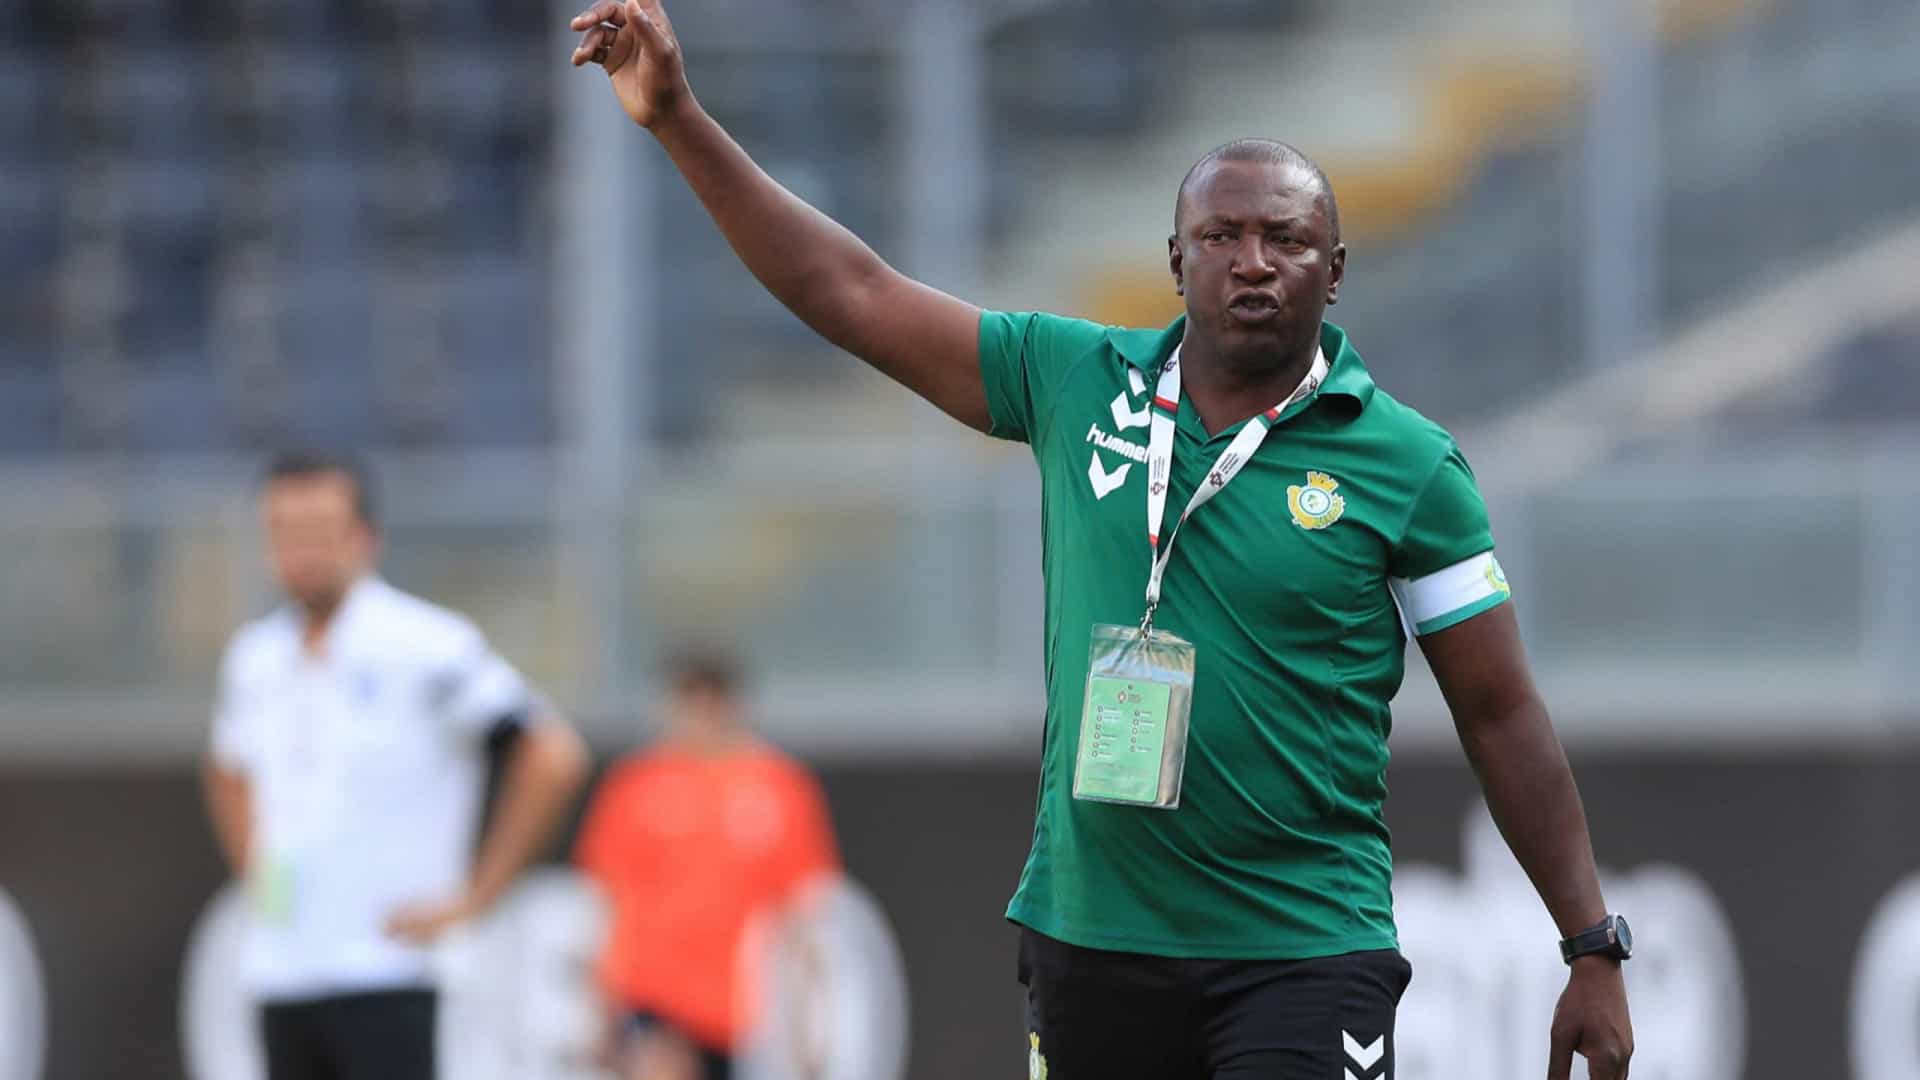 "Nous allons provoquer le Ghana", le coach du Mozambique dévoile sa stratégie